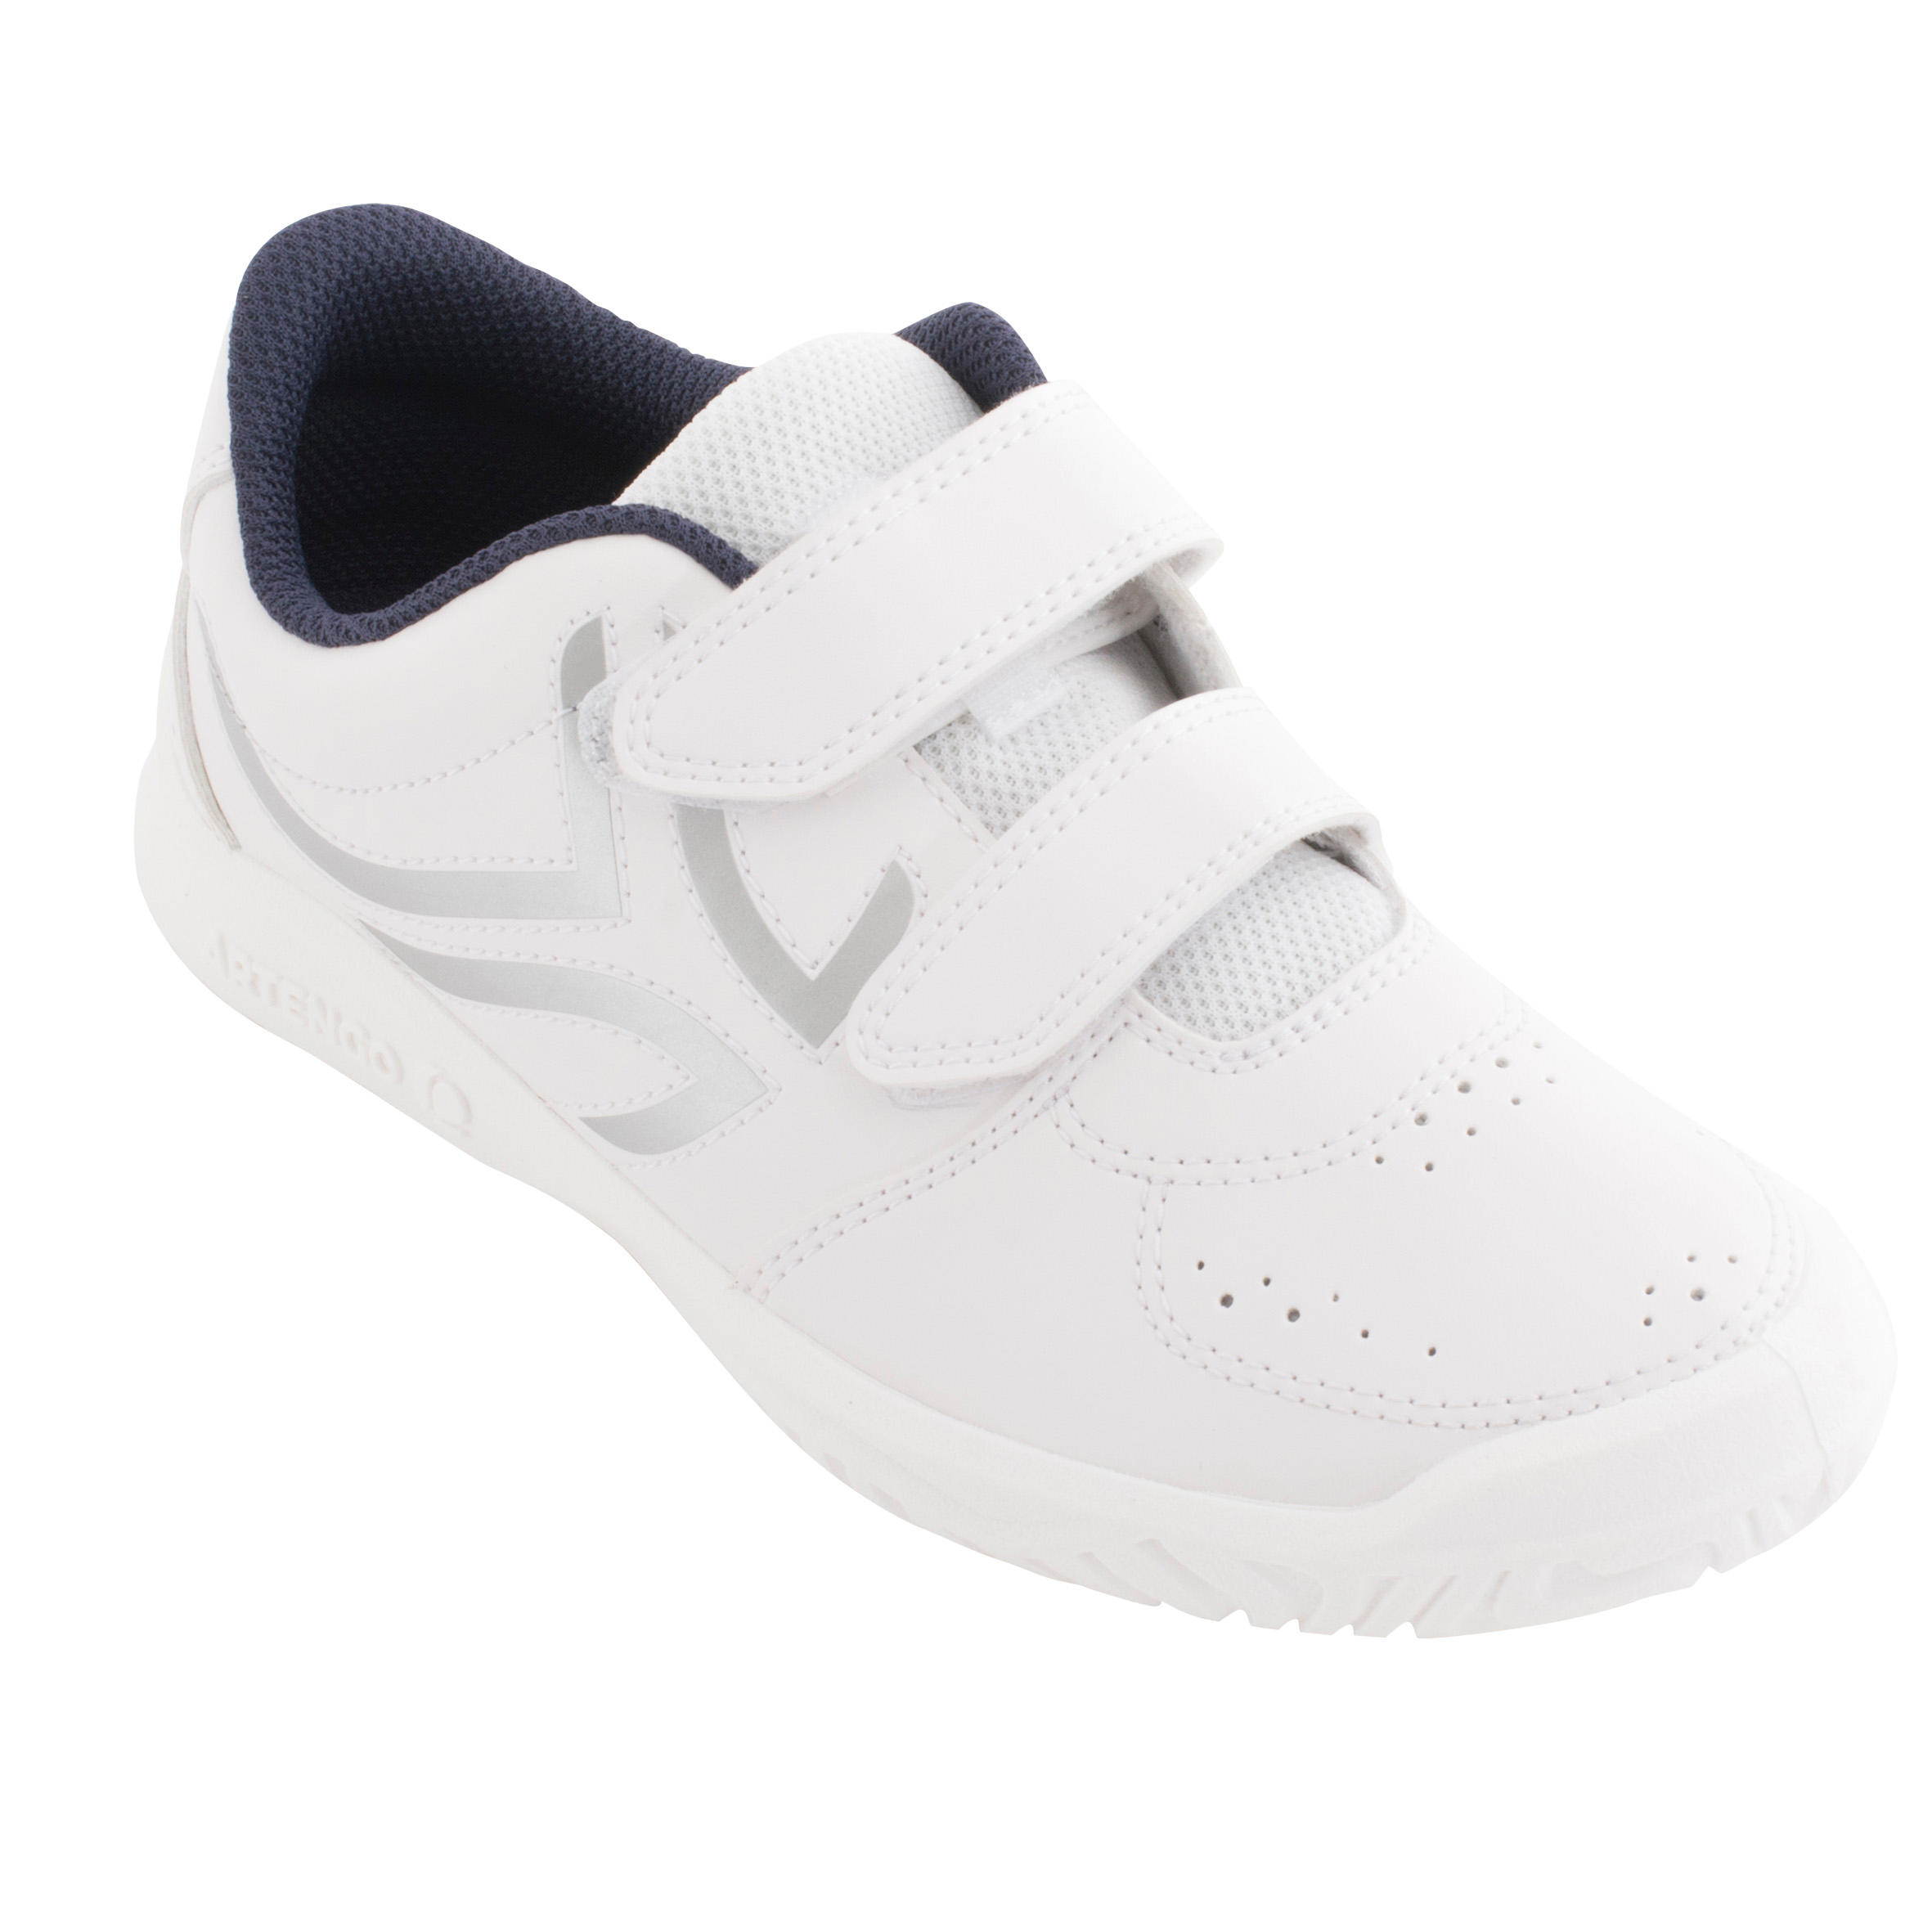 รองเท้าเทนนิสสำหรับเด็กรุ่น TS100 (สีขาว/ฟ้า) เด็กผู้ชาย 4 ถึง 16 ปี เทนนิส รองเท้ากีฬา รองเท้า รองเท้าผ้าใบ